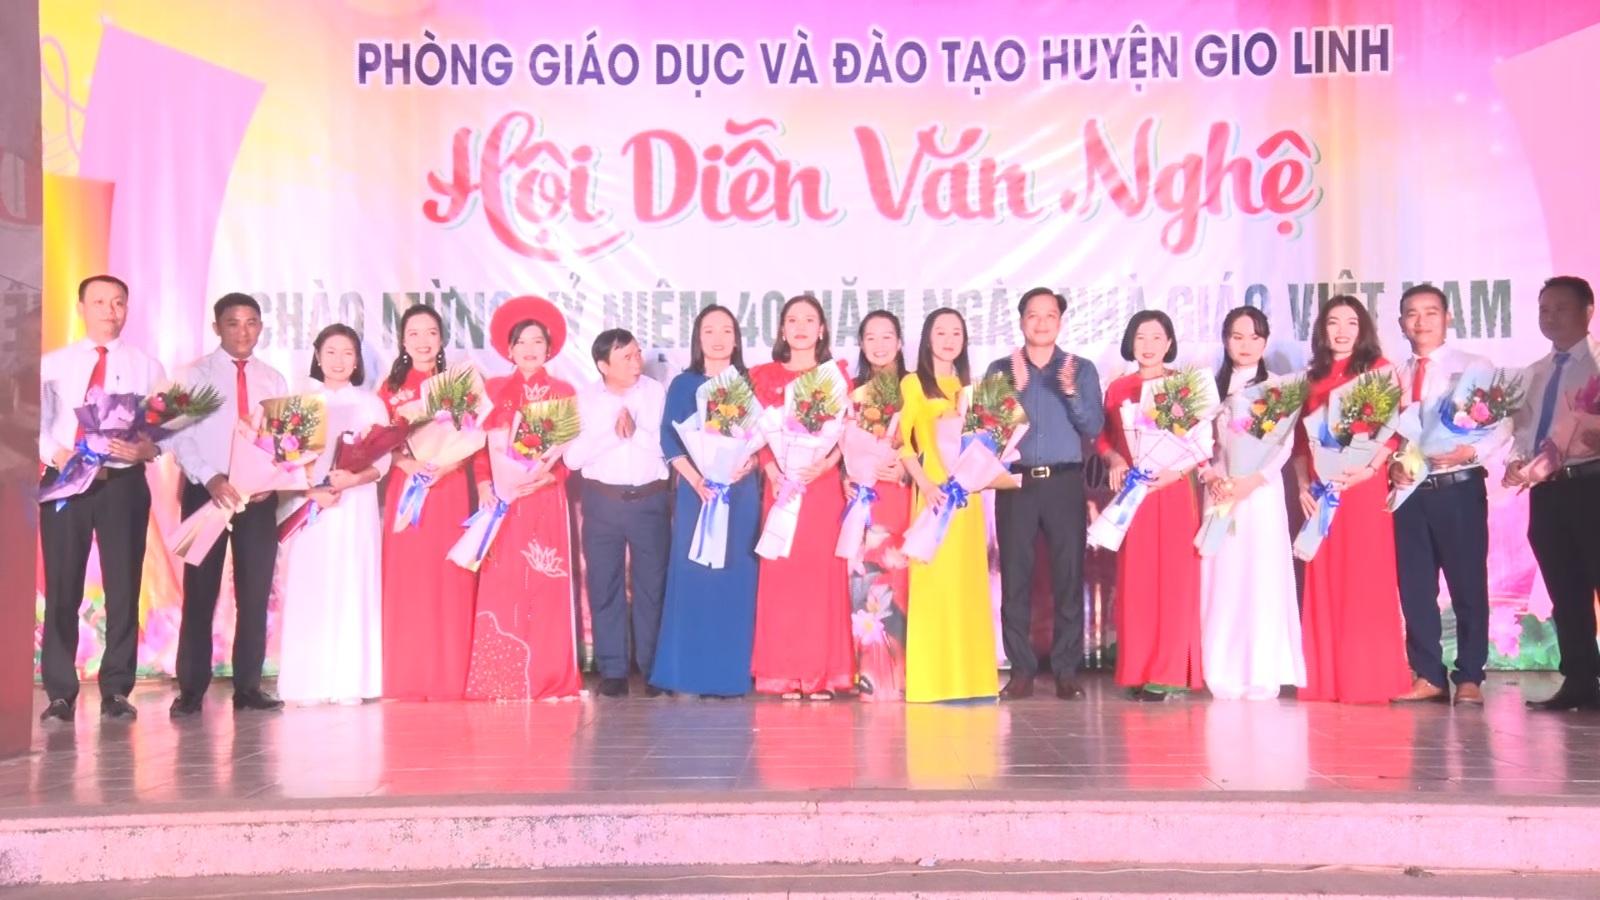 Phòng Giáo dục và Đào tạo huyện Gio Linh đã tổ chức Hội diễn văn nghệ Nhân dịp kỷ 40 năm ngày nhà...